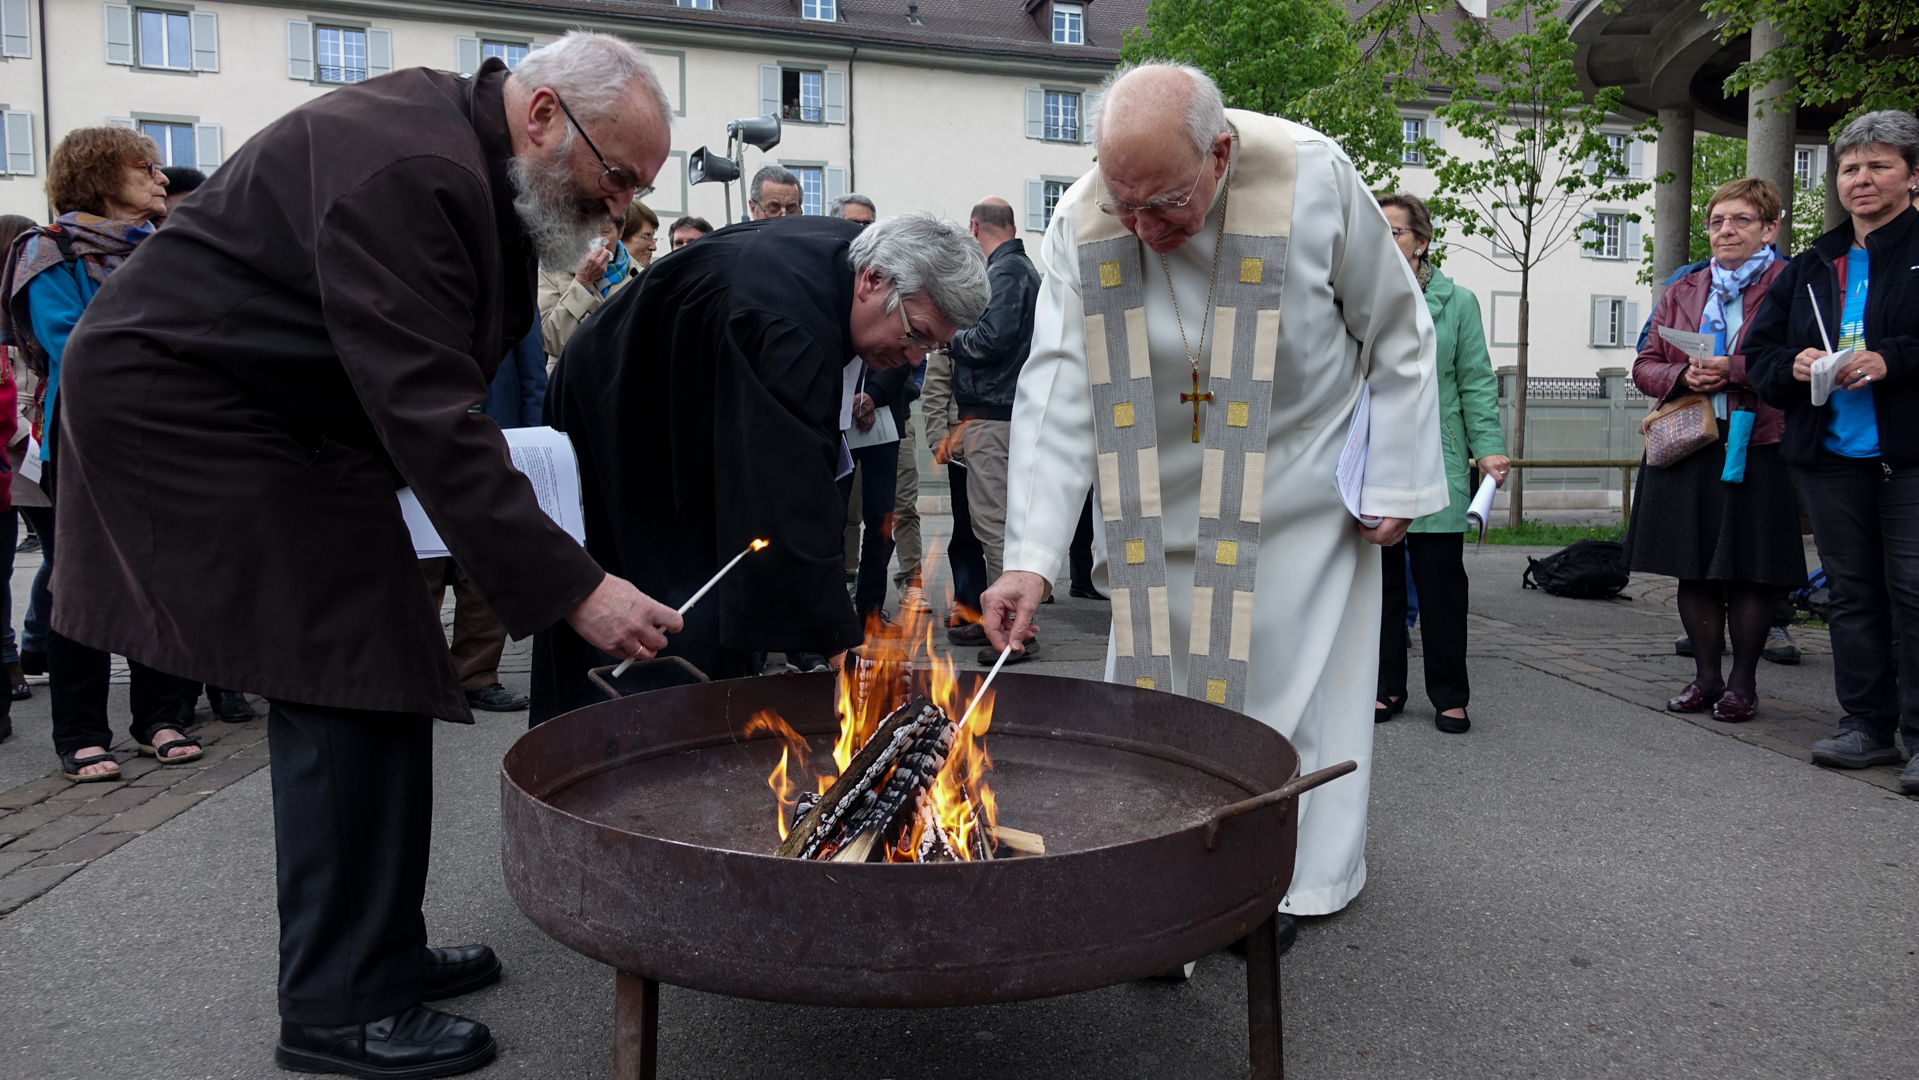 Orthodoxes, protestants et catholiques unis dans la joie de Pâques | © Maurice Page